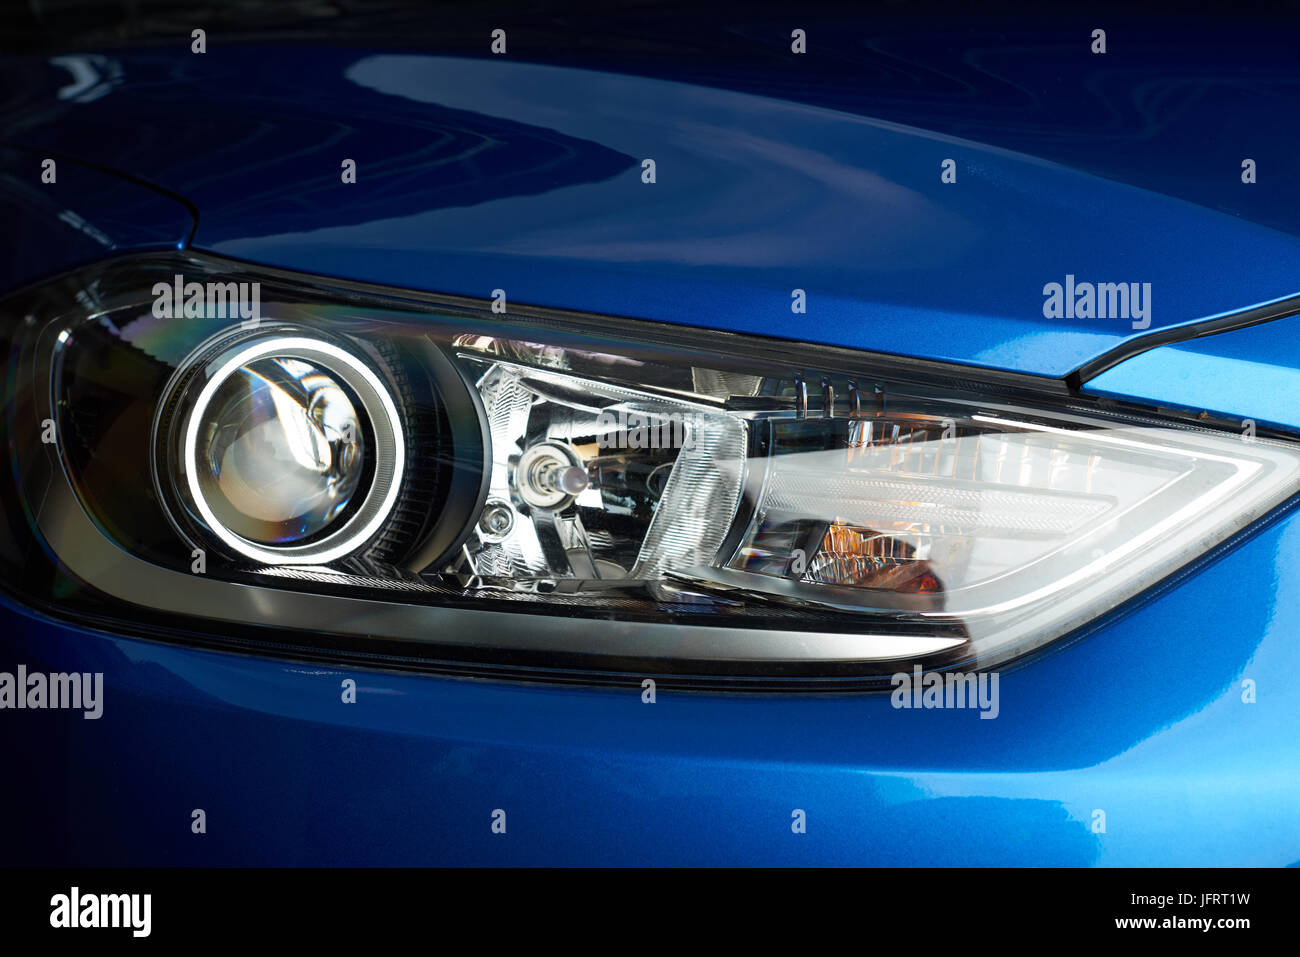 LED-Scheinwerfer von modernen Auto Nahaufnahme Stockfotografie - Alamy